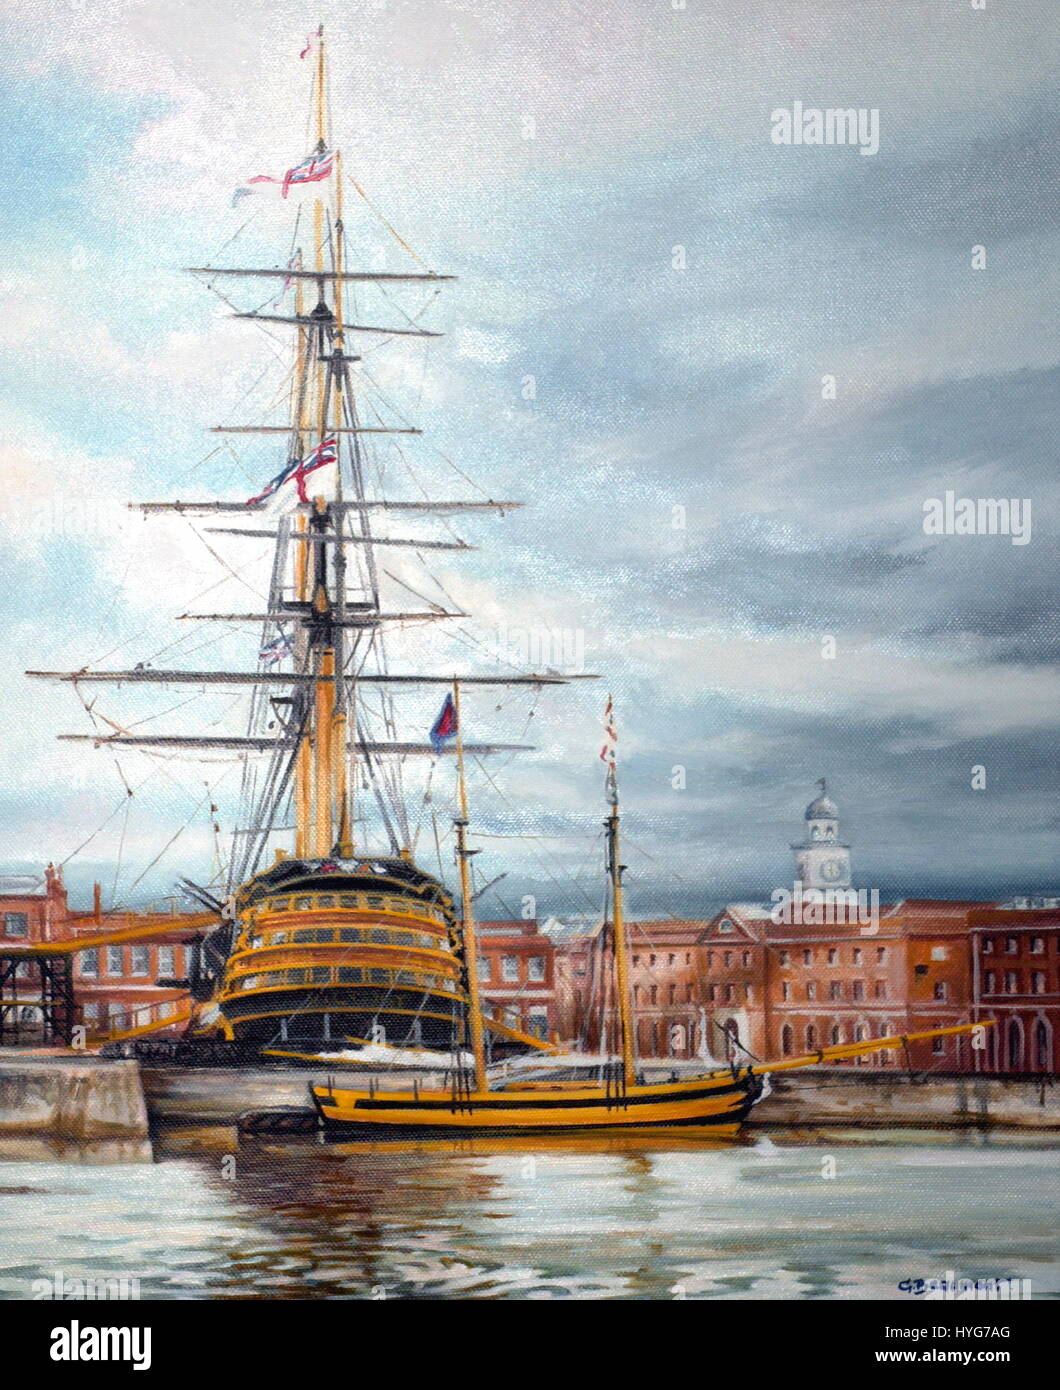 AJAXNETPHOTO. L'année 2005. PORTSMOUTH, Angleterre. BEAUMONT - peinture - HMS Victory ET GOELETTE PICKLE. 46CMSX38CMS - ORIGINAL HUILE SUR TOILE PAR L'ARTISTE CAROLINE BEAUMONT REPRÉSENTANT NELSON'S 1805 BATAILLE DE TRAFALGAR, PHARE ET LA GOÉLETTE PICKLE SUR LEQUEL L'AMIRAL COLLINGWOOD'S ENVOI DE LA BATAILLE A ÉTÉ PORTÉE À l'Angleterre, l'ENSEMBLE DANS LA BASE NAVALE DE PORTSMOUTH ROYAL SITE DU PATRIMOINE MONDIAL EN JUILLET 2005. ©Copyright:CAROLINE BEAUMONT. PHOTO:JONATHAN EASTLAND/AJAX REF:61703722 Banque D'Images